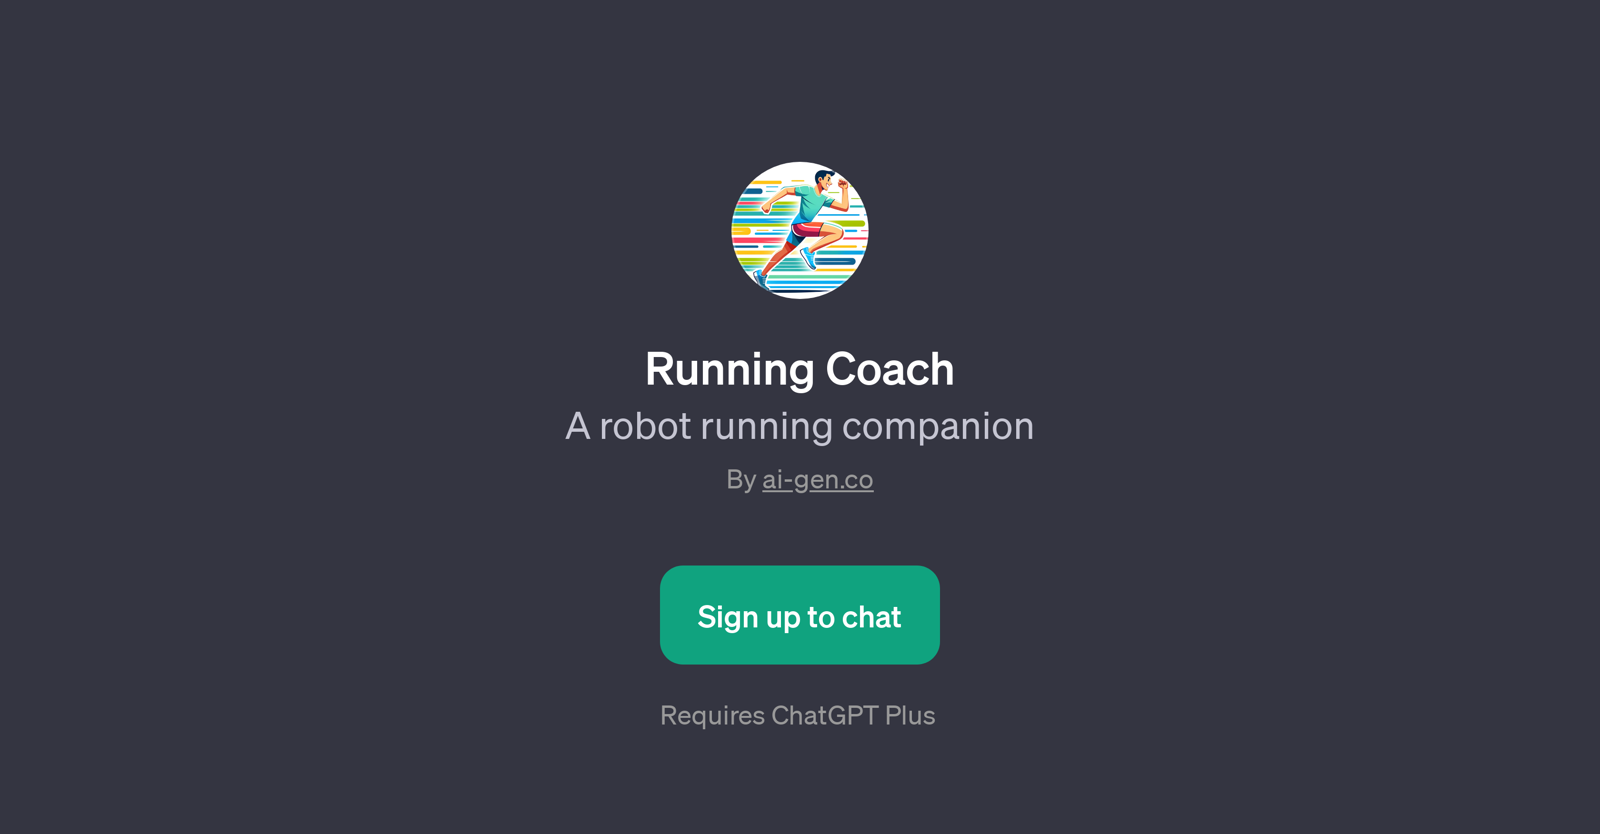 Running Coach website